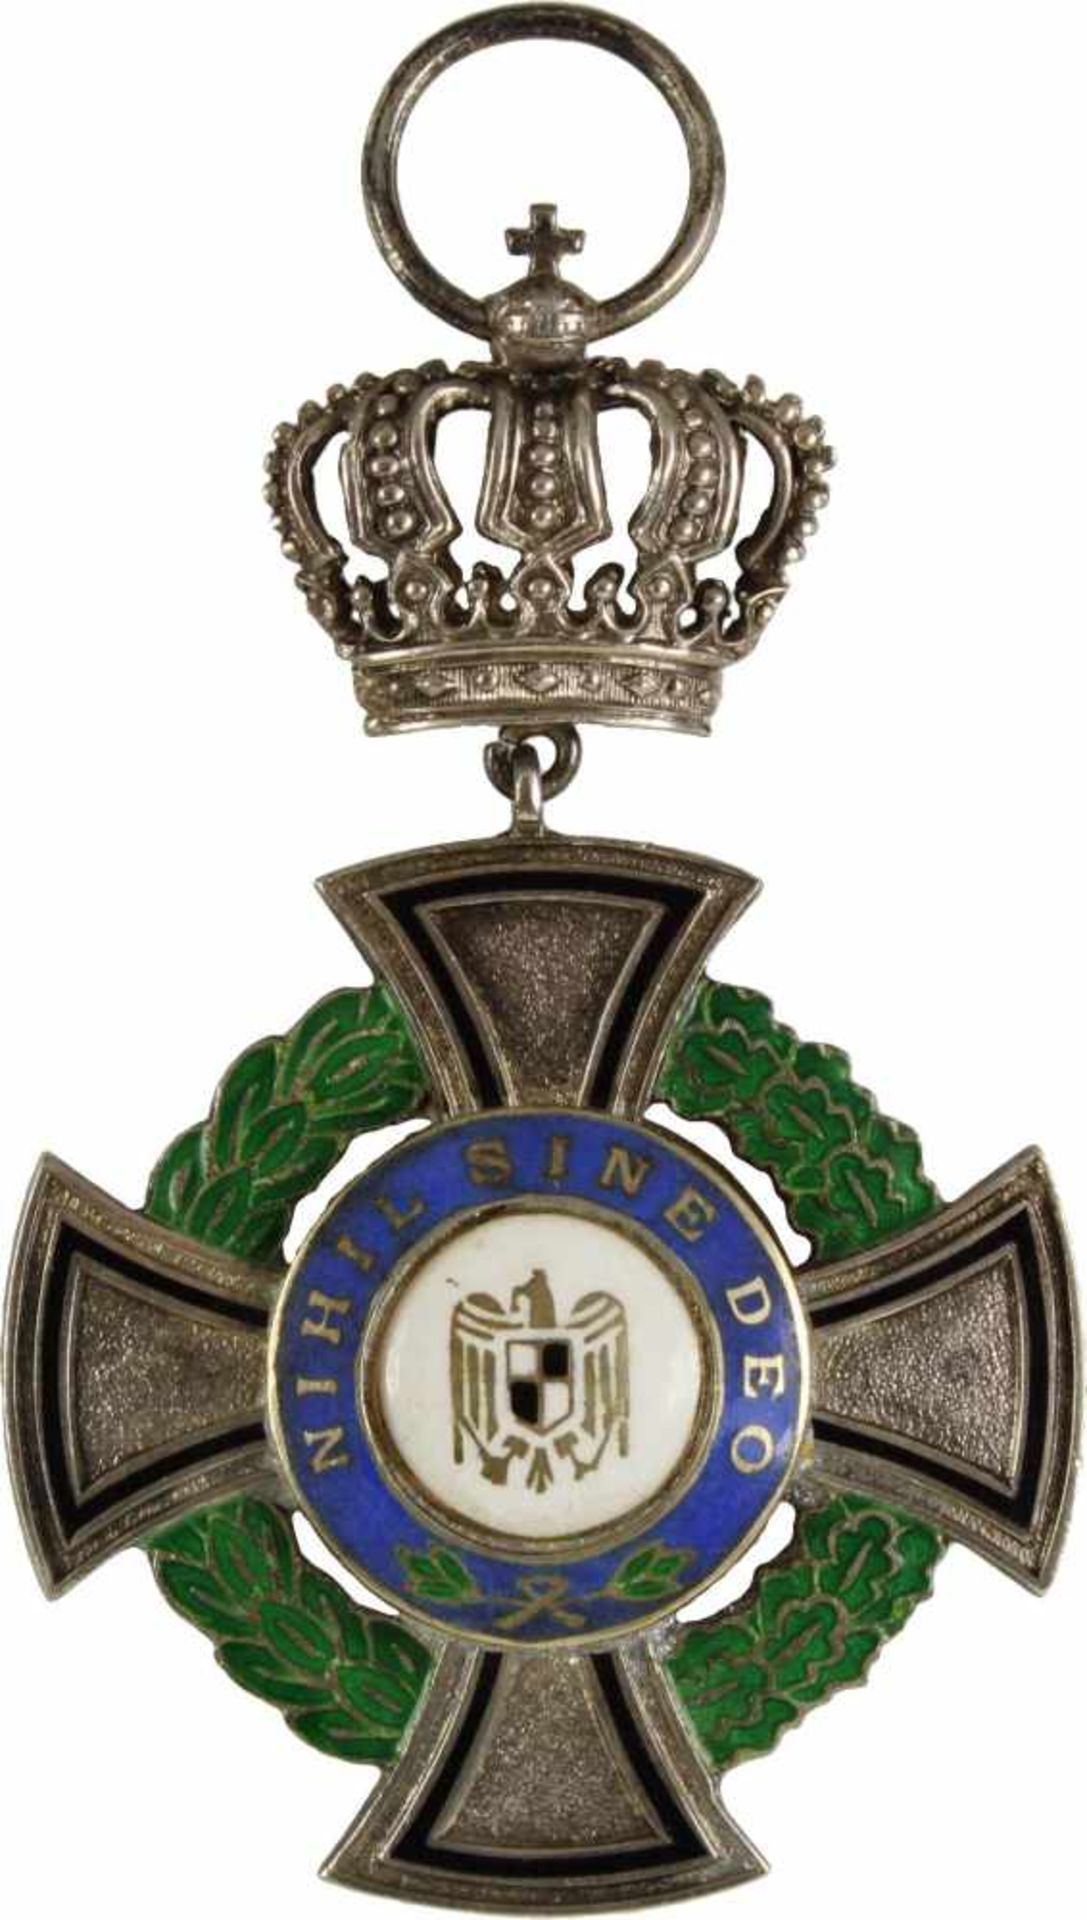 Königl. Rumänischer Ordendes Regierenden Hauses, Ritterkreuz mit Krone. Kreuz Silber emailliert, das